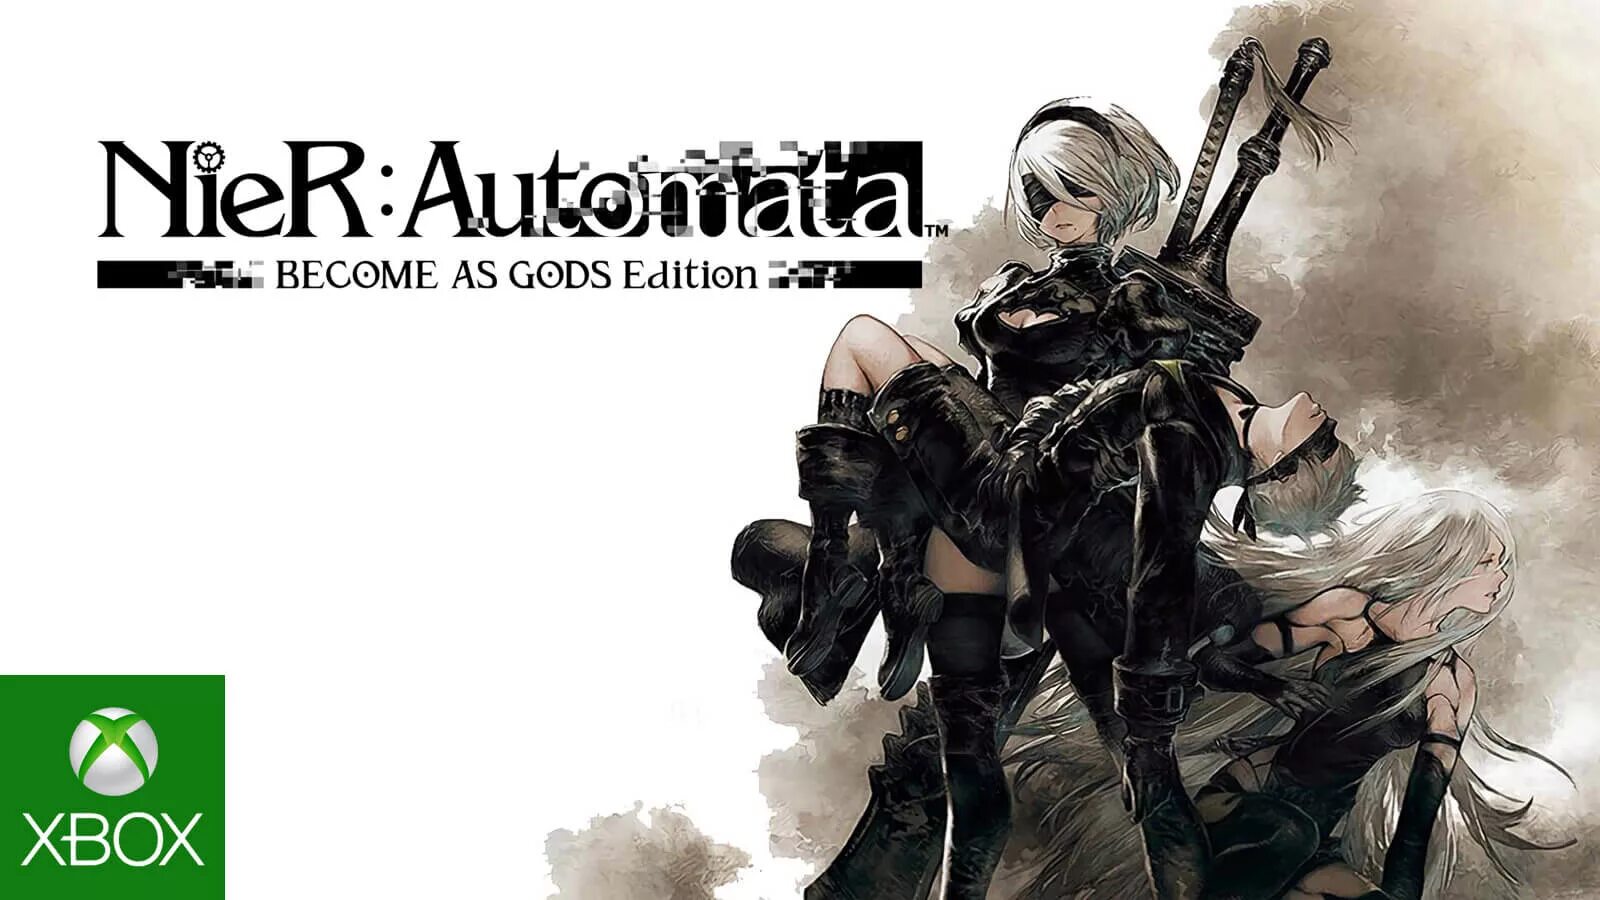 Nier nintendo. NIER Automata обложка. NIER: Automata - become as Gods Edition. NIER Automata Xbox. Ниер автомата обложка.